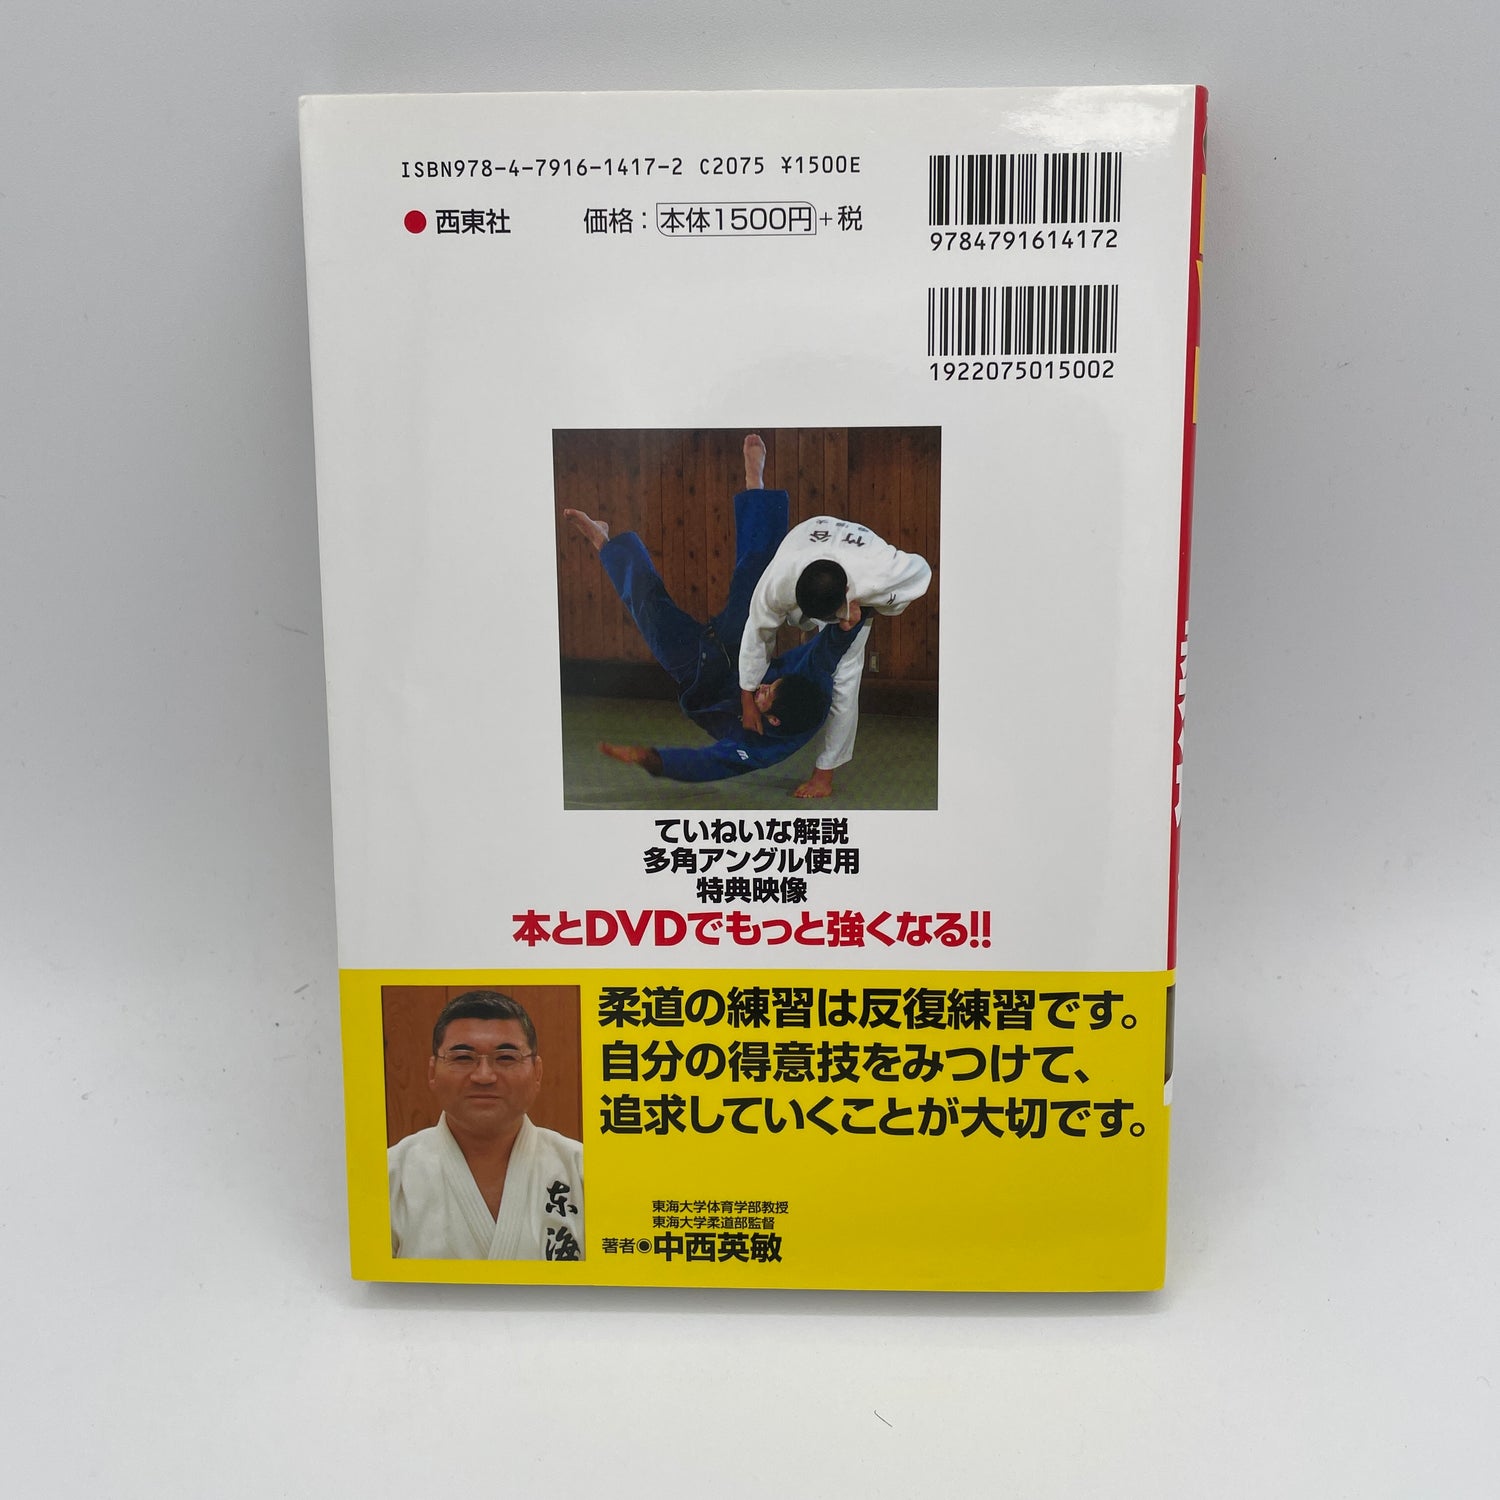 Introducción al libro y DVD de judo de Hidetoshi Nakanishi (usado) 